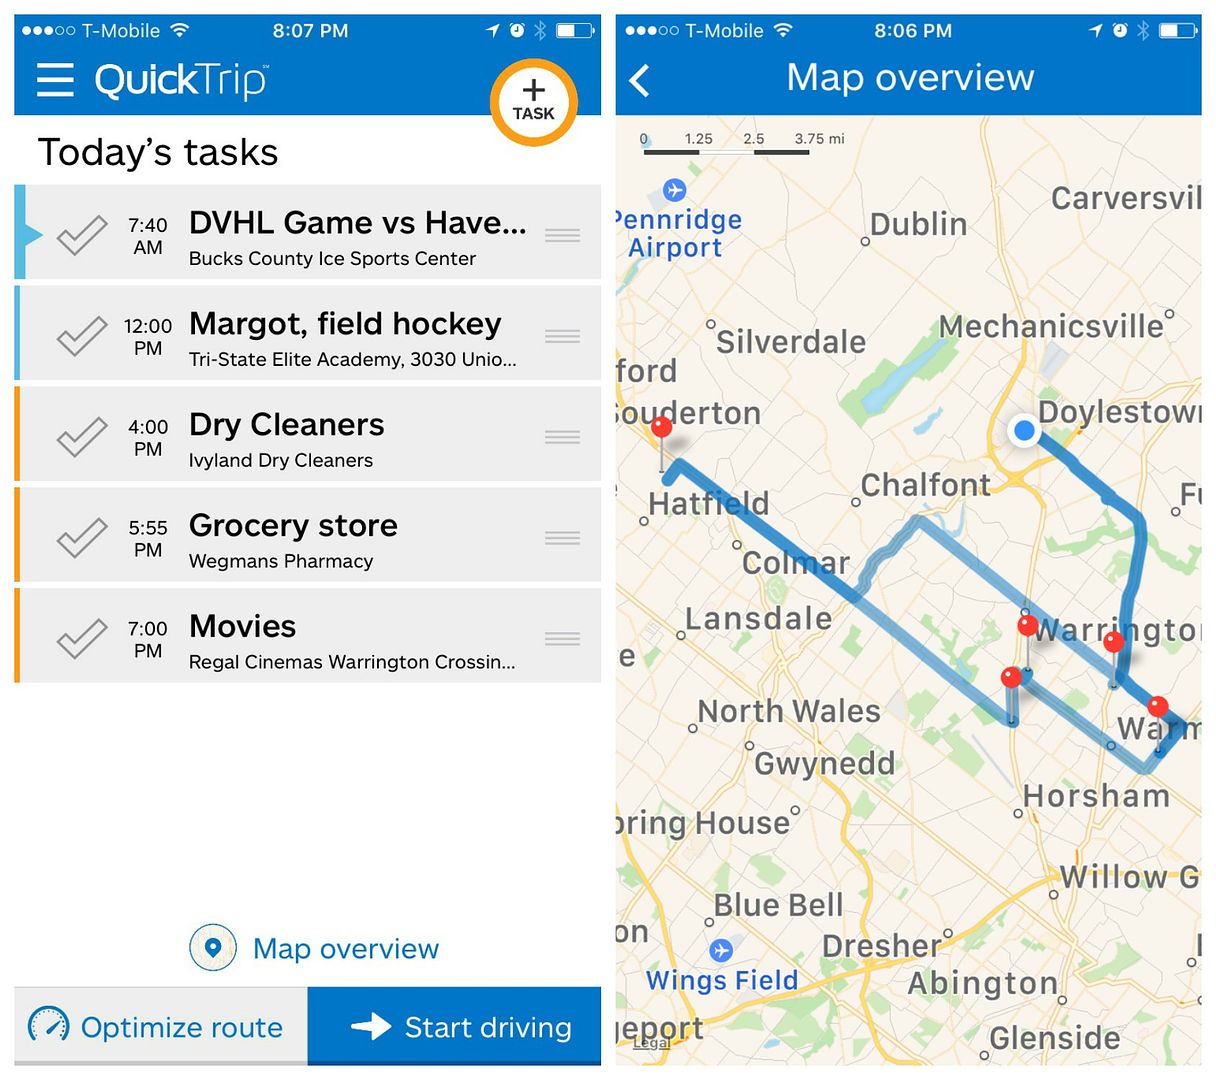 aplikacja QuickTrip optymalizuje listę rzeczy do zrobienia i zapewnia najmądrzejsze trasy, aby zaoszczędzić czas